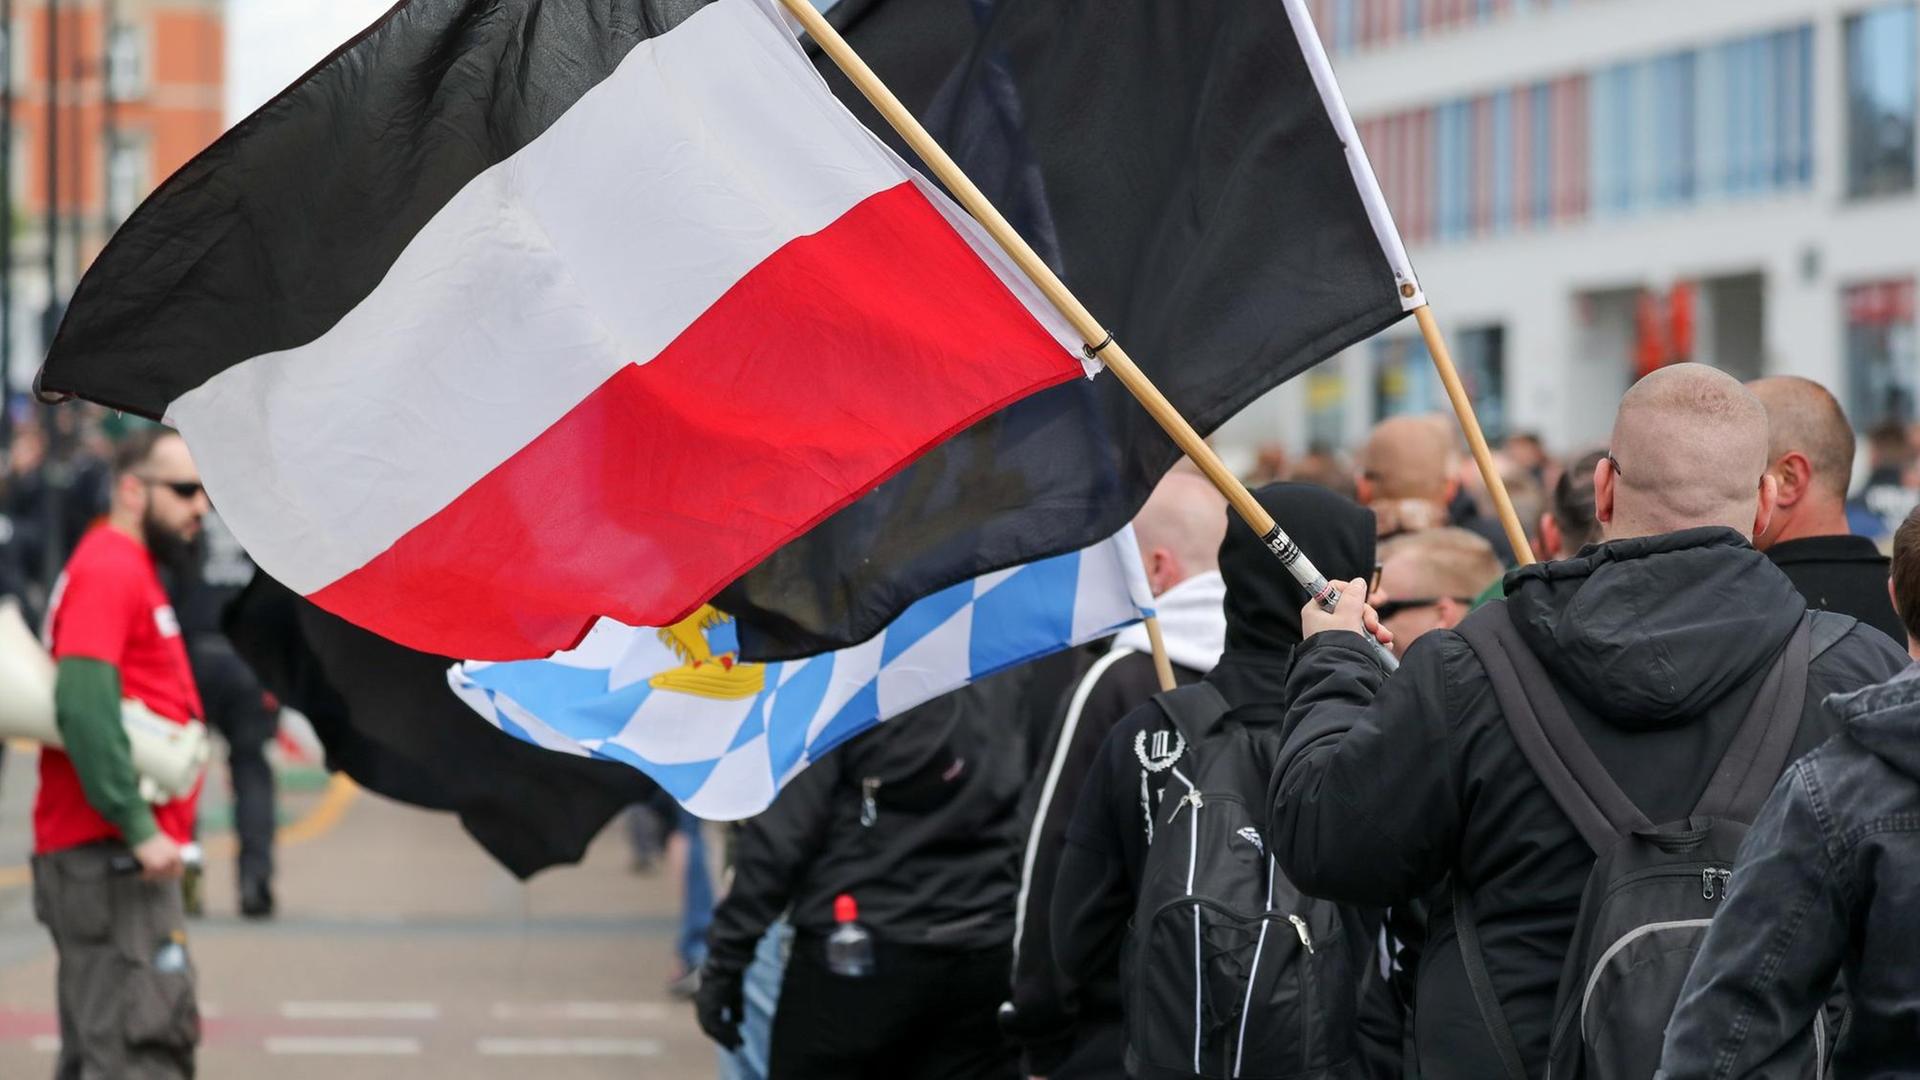 Glatzköpfige, in schwarz gekleidete Männer sind von hinten zu sehen, wie sie mit Flaggen durch die Straße ziehen.